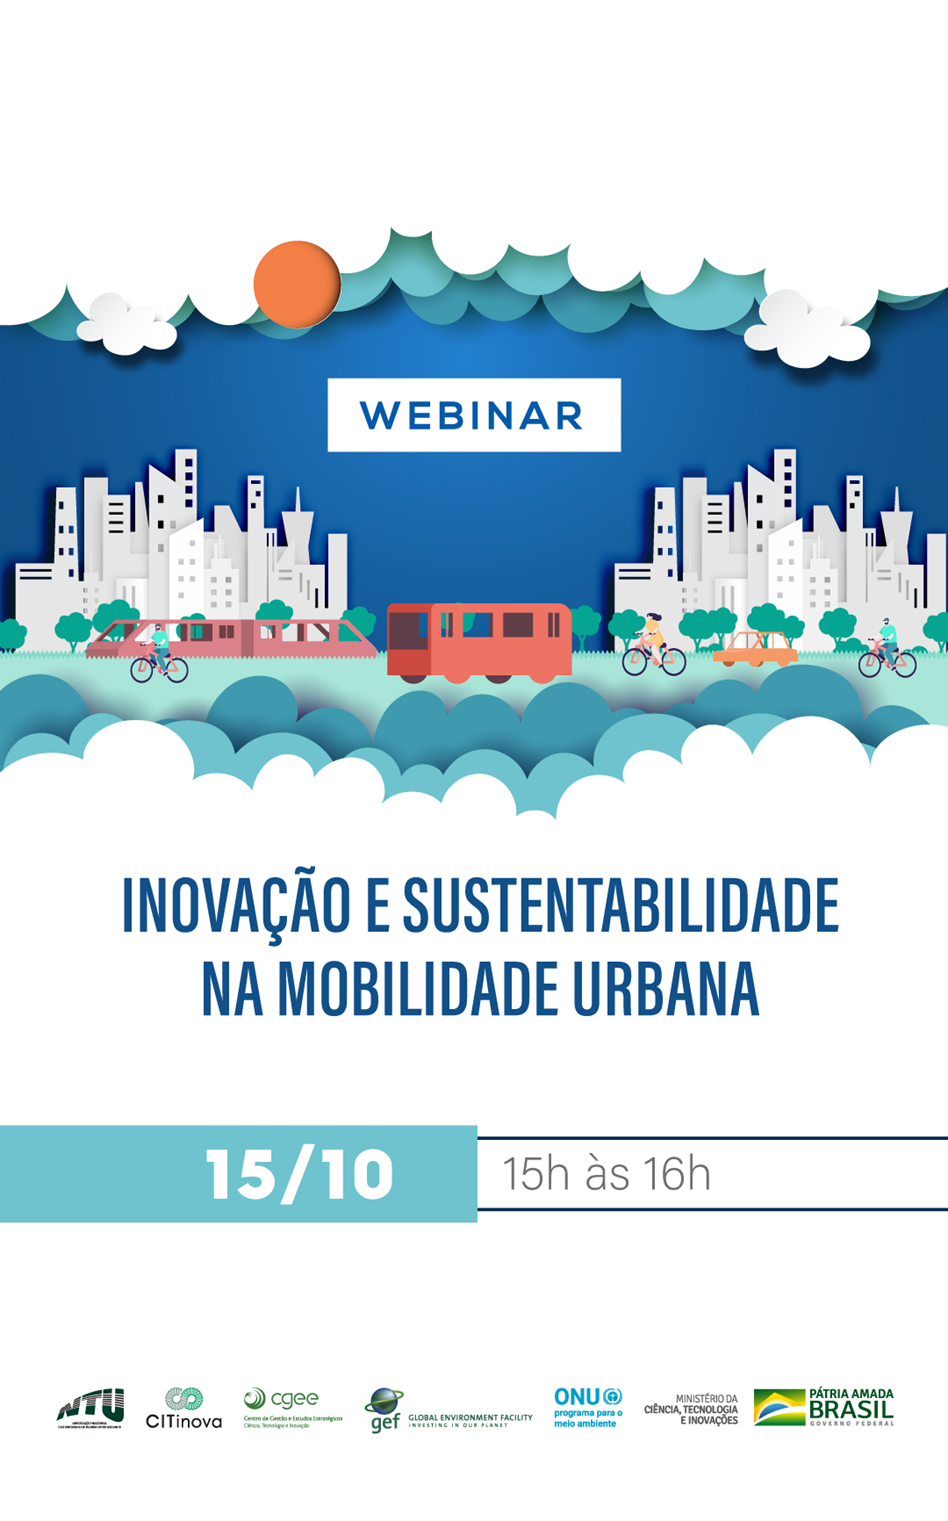 Webinar “Inovação e Sustentabilidade na Mobilidade Urbana”